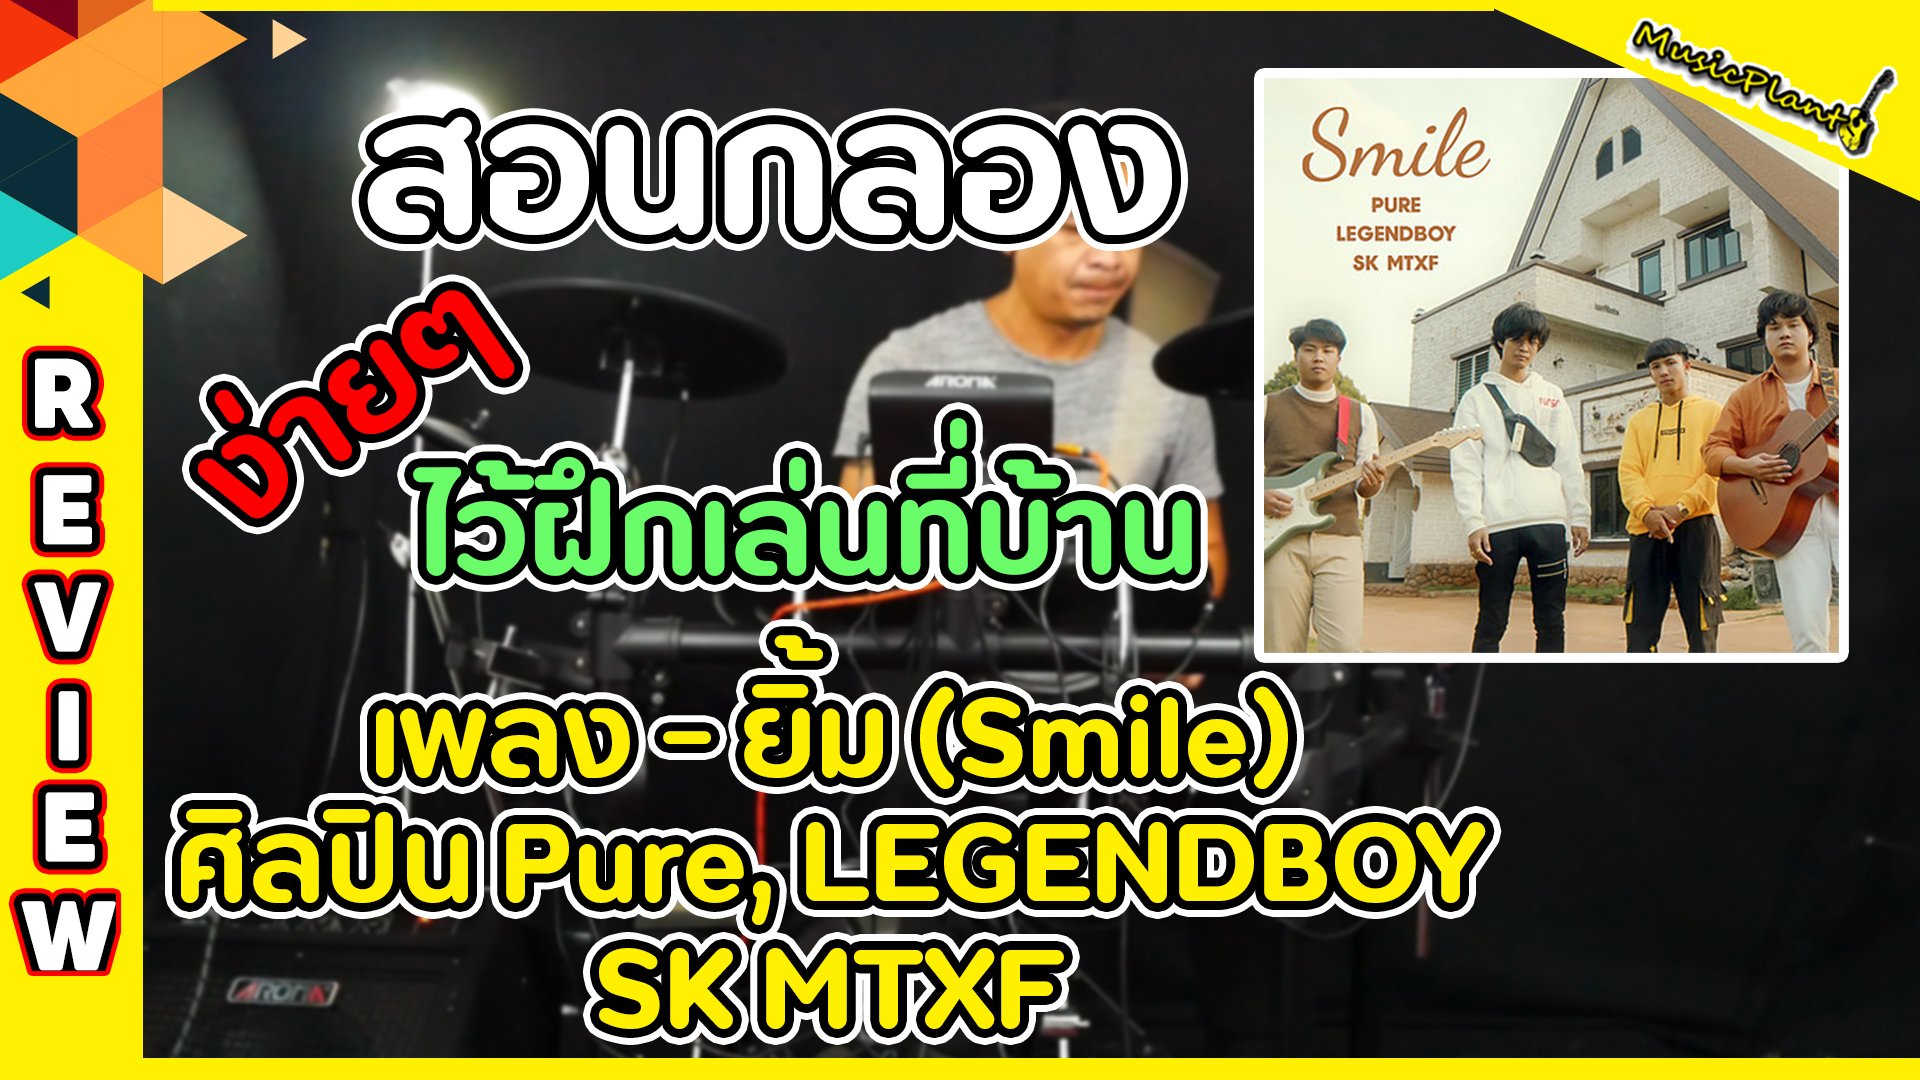 สอนตีกลองเพลง ยิ้ม (Smile) ศิลปิน  Pure, LEGENDBOY, SK MTXF